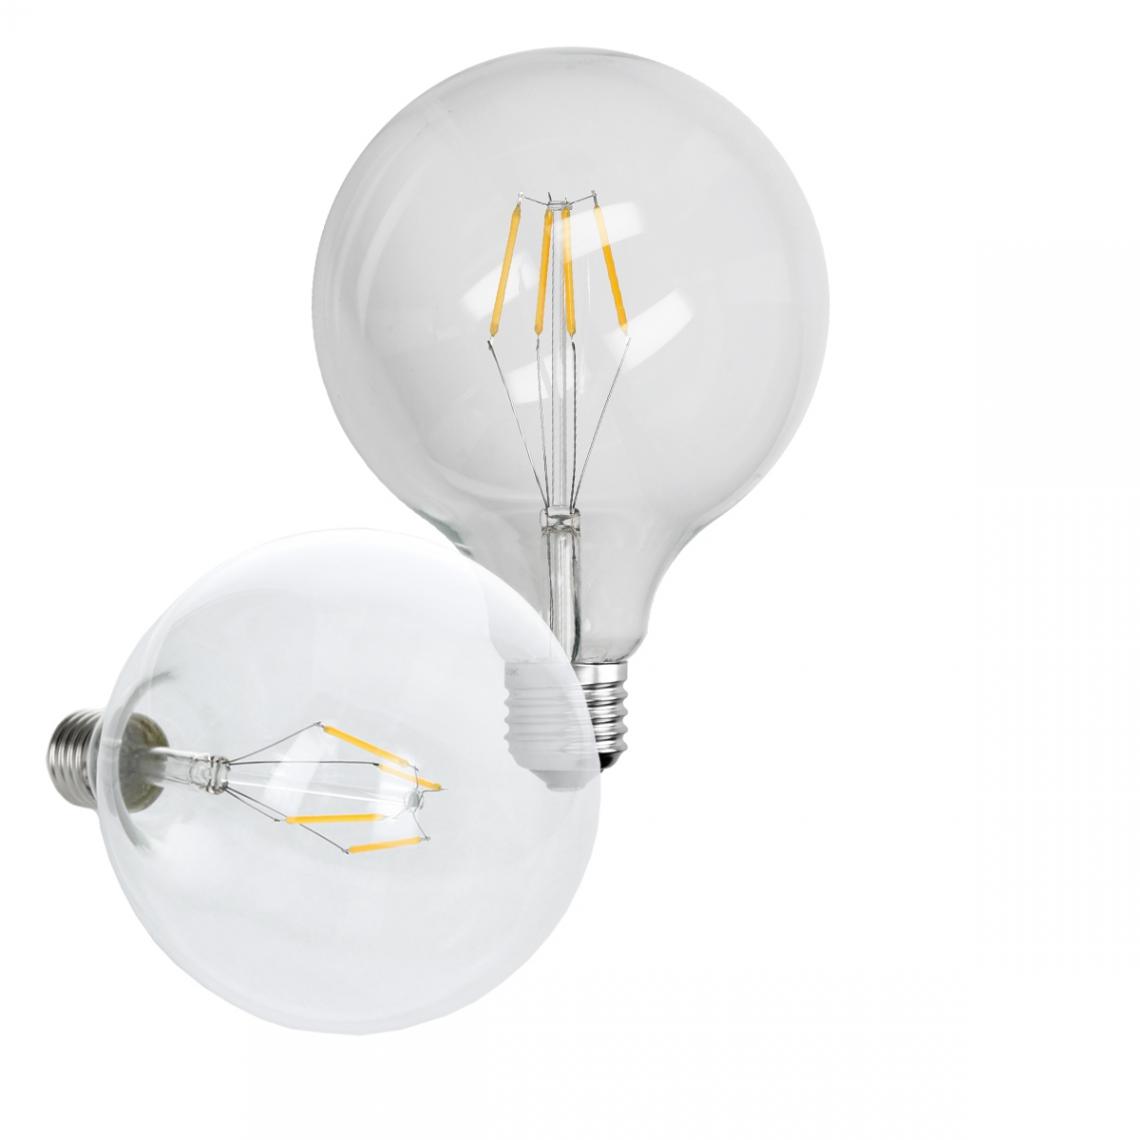 Ecd Germany - ECD Germany 1 x LED Filament de l'ampoule E27 Edison 4W 125 mm 403 Lumen Angle de courant alternatif 120 ° 220-240 V reste caché et remplace 20W Lampe incandescente blanc chaud - Ampoules LED